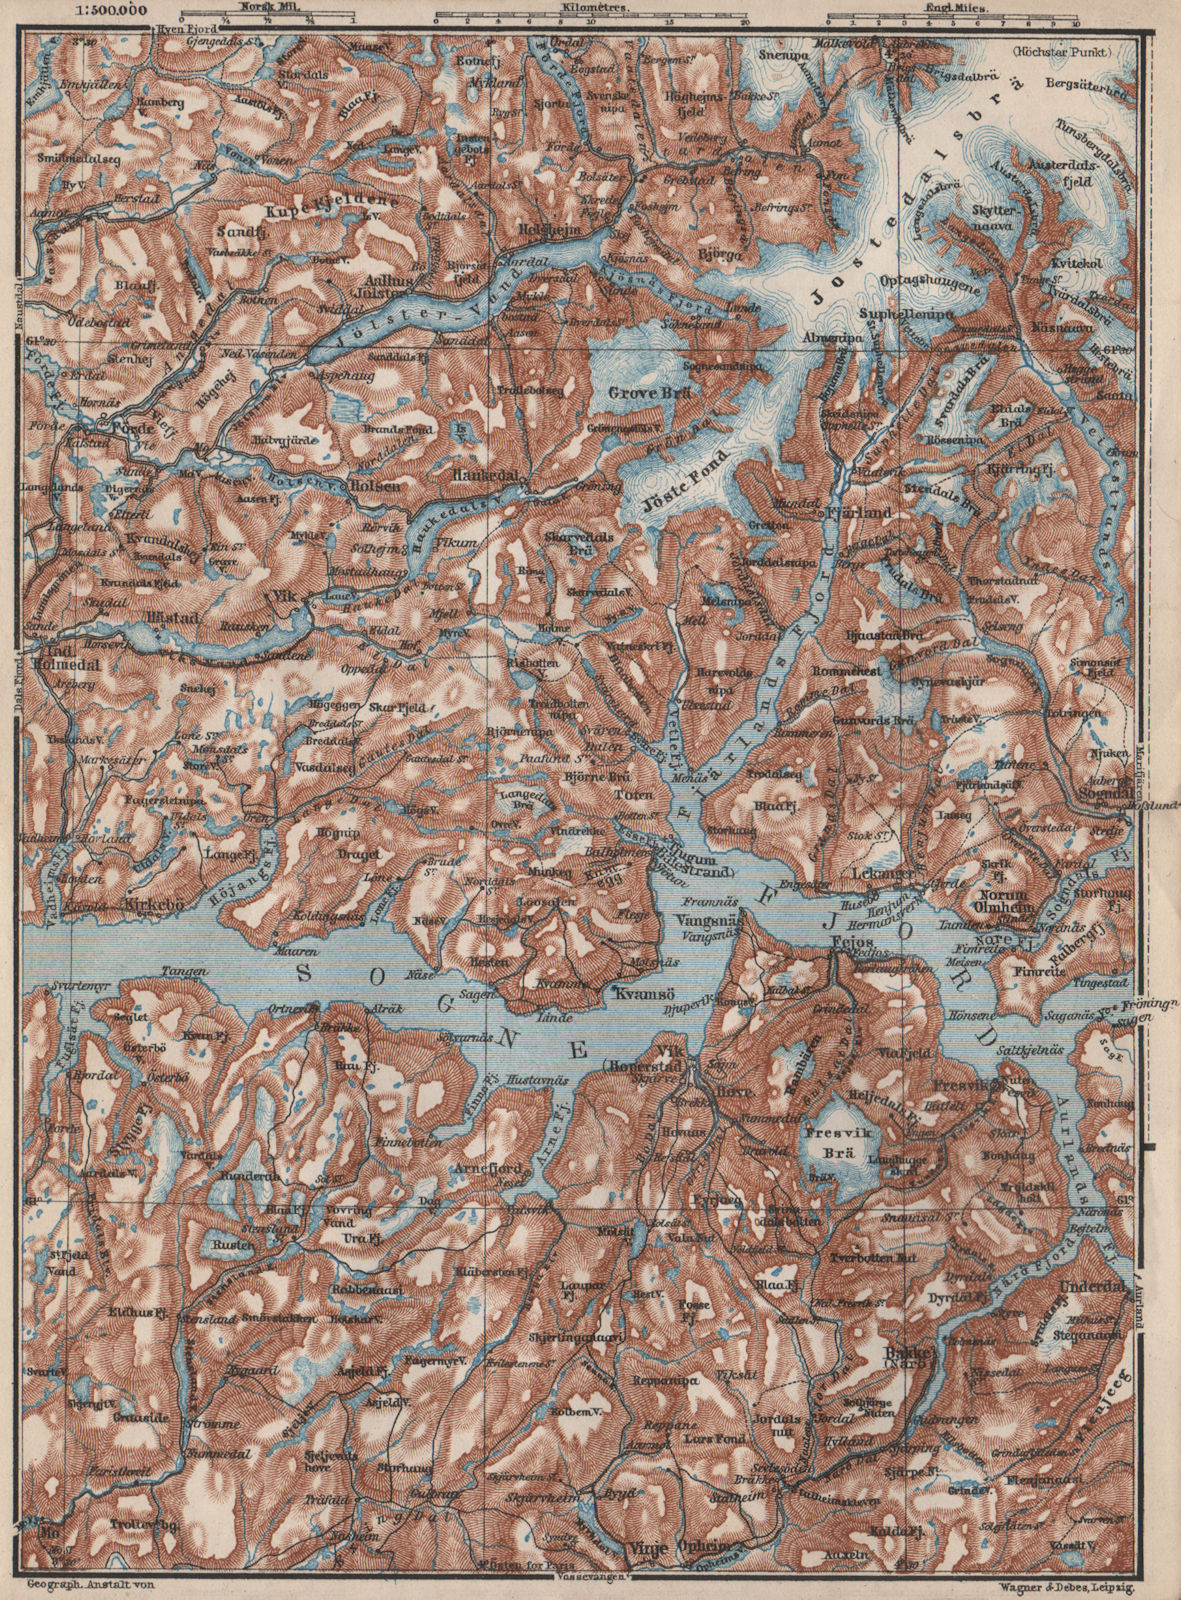 CENTRAL SOGNEFJORD topo-map. Leikanger Sogndal. Norway kart. BAEDEKER 1885